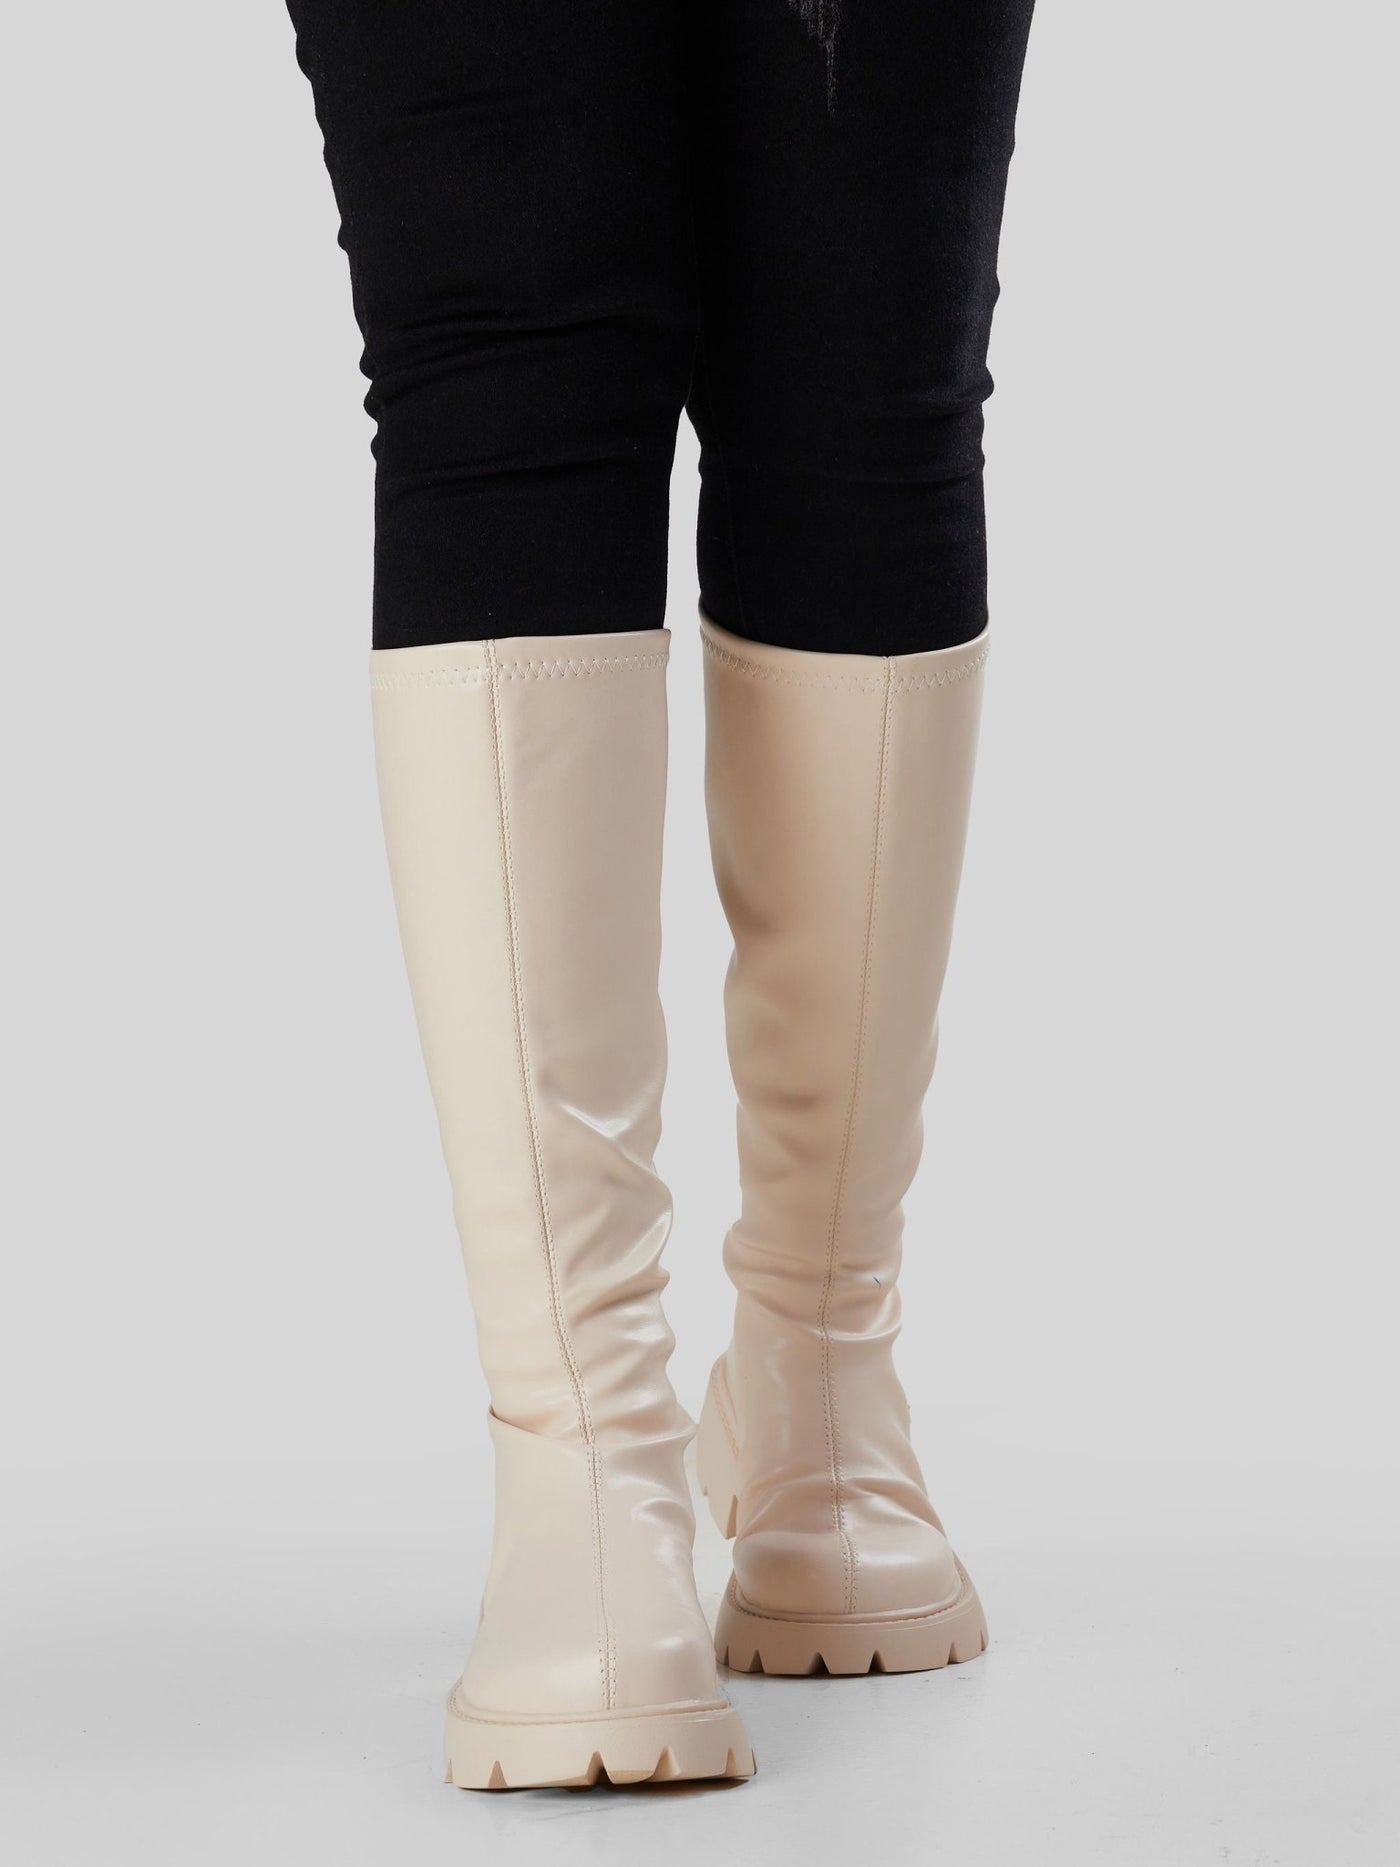 Ziatu Women's Knee High Boots - Cream - Shopzetu